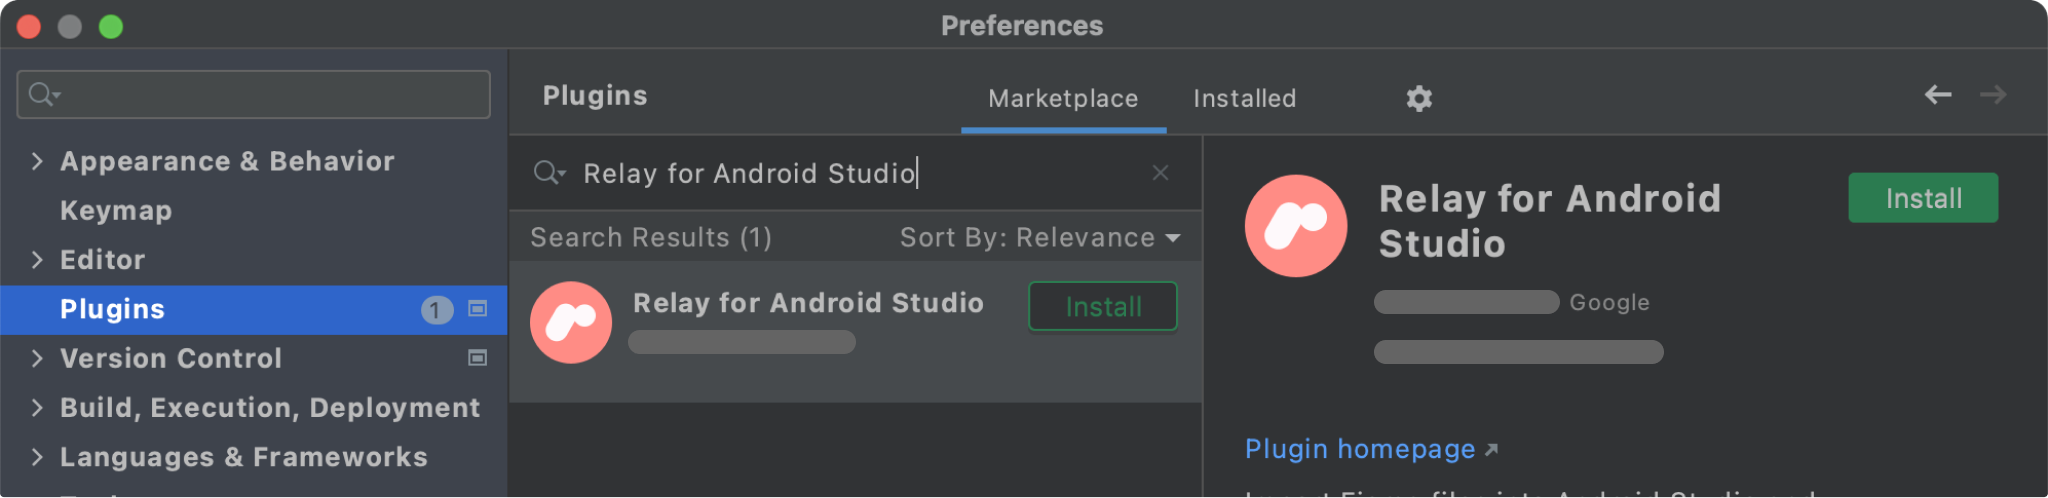 Inoltro per Android Studio nel marketplace